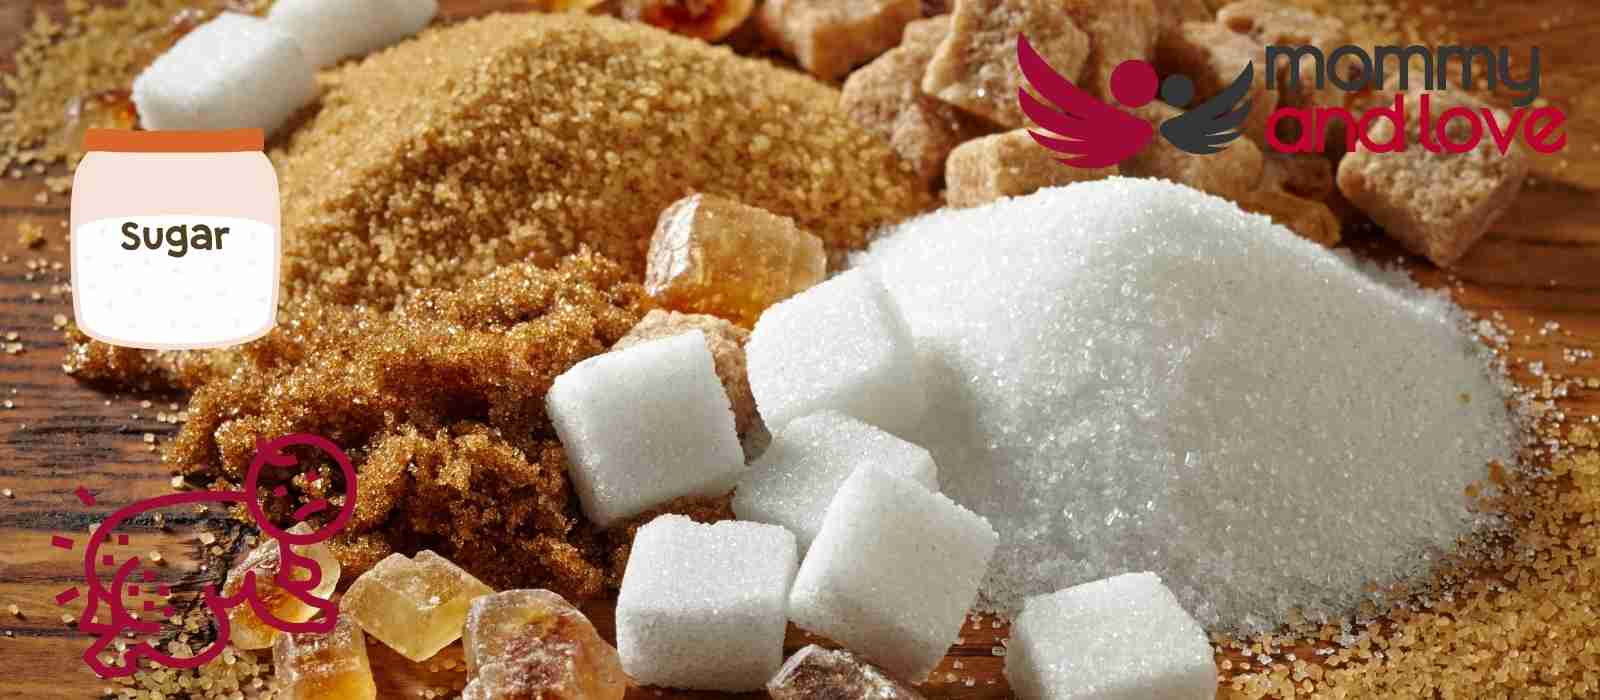 Can Sugar Cause Diaper Rash